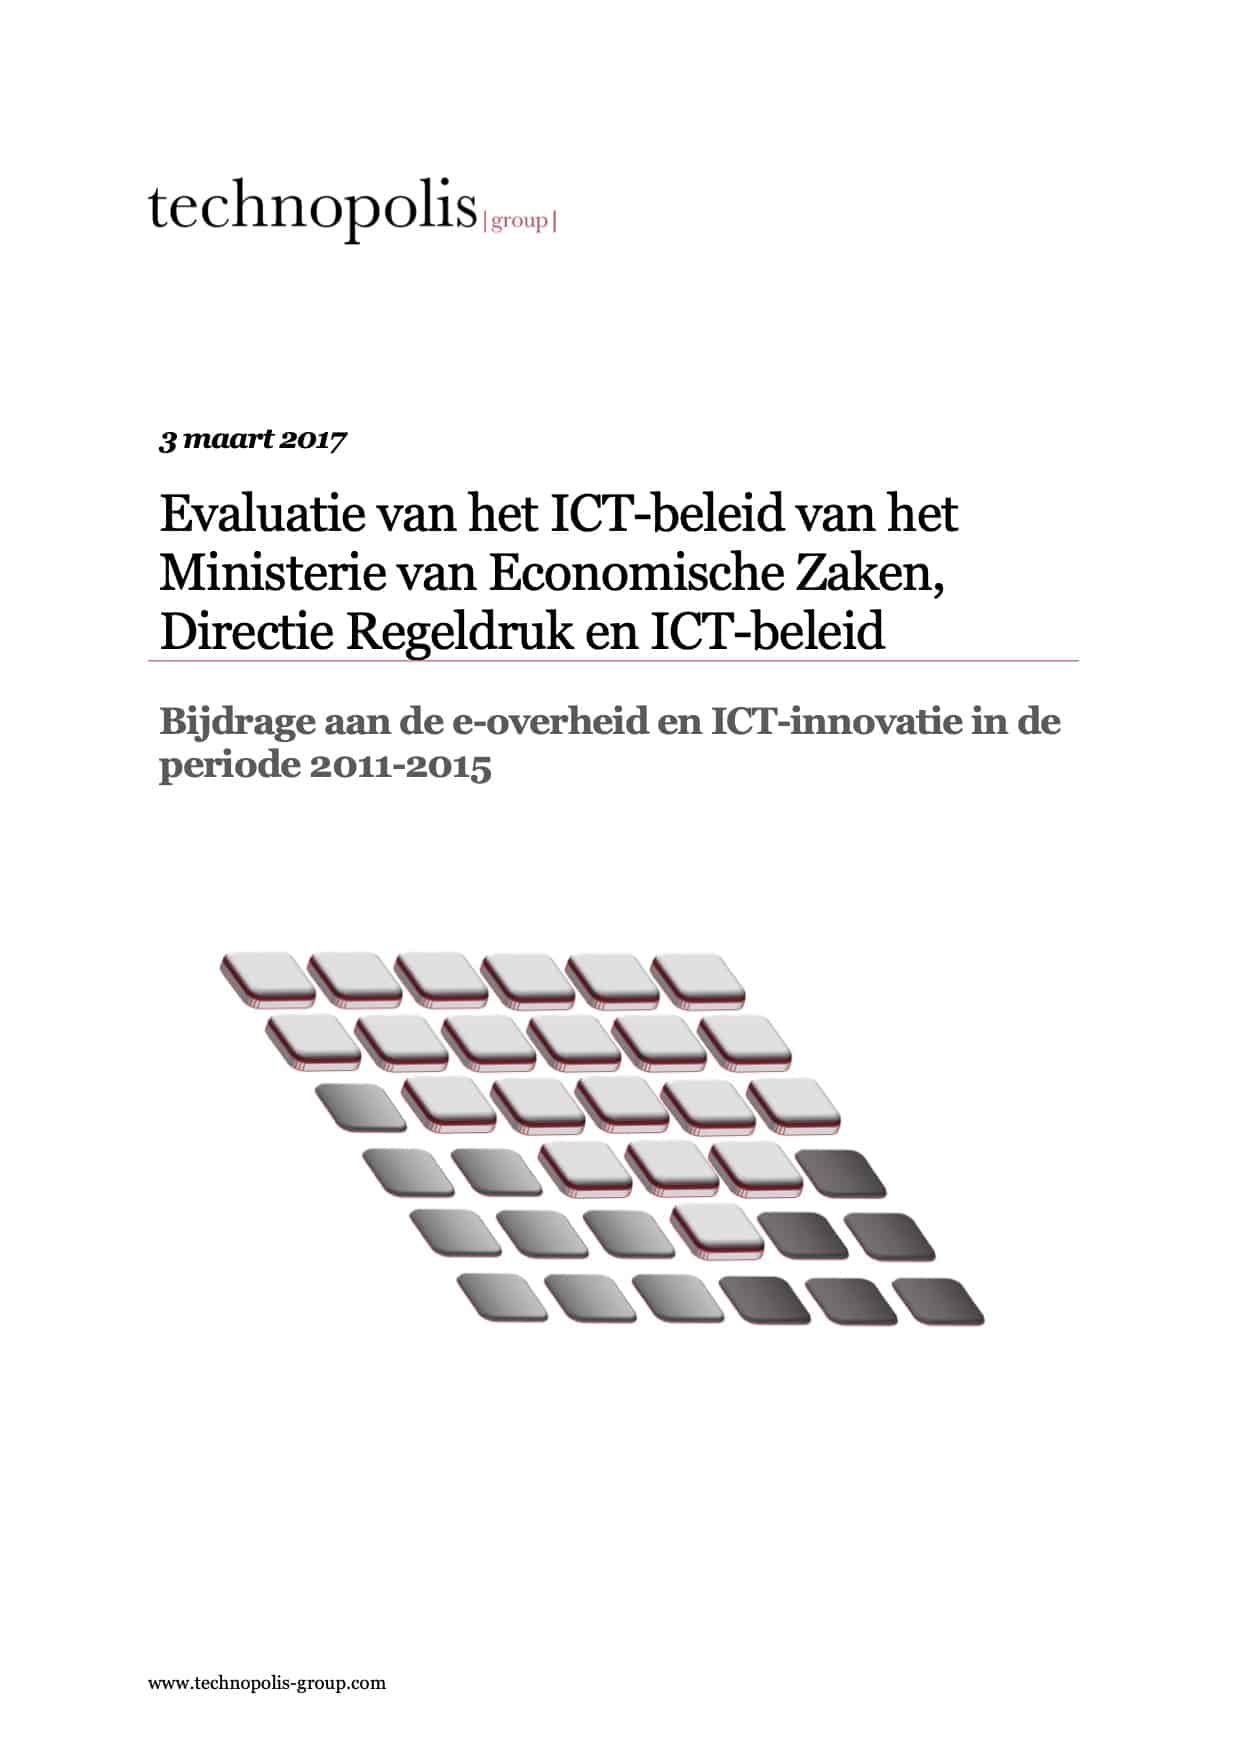 Evaluatie van het ICT-beleid van het Ministerie van Economische Zaken, Directie Regeldruk en ICT-beleid